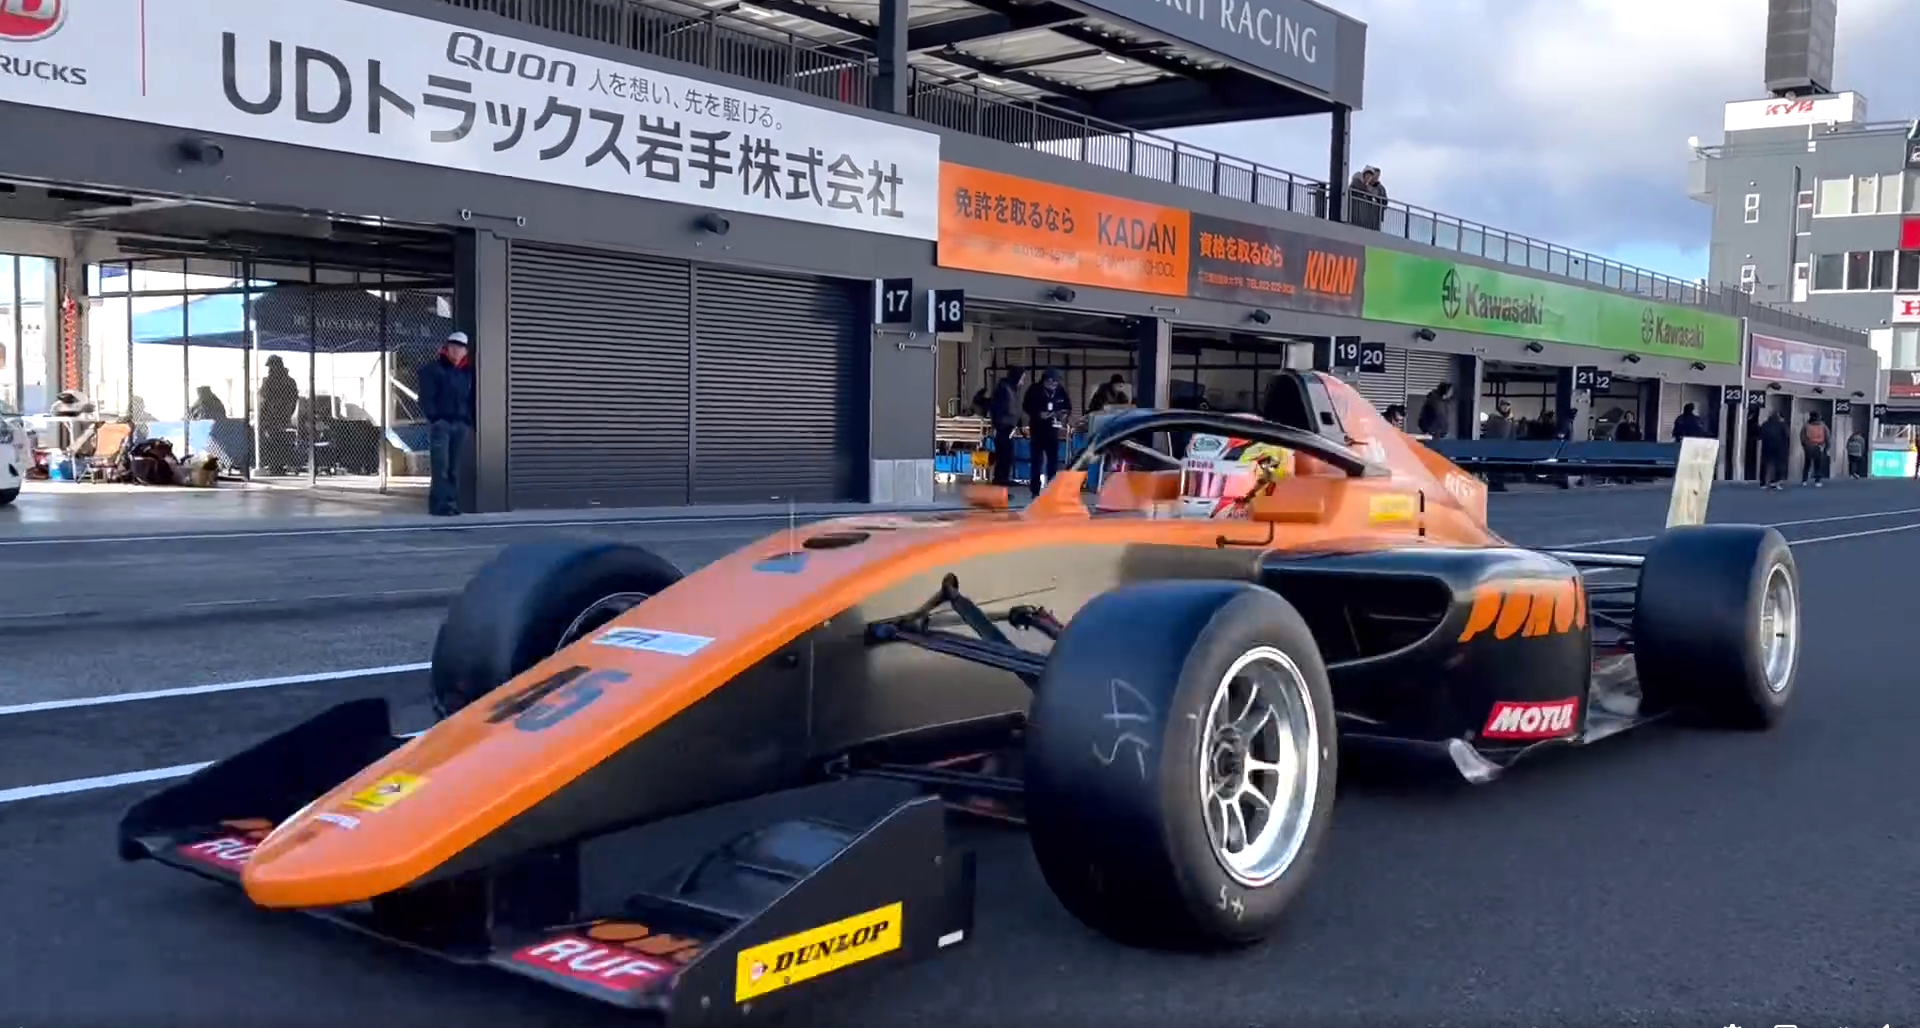 Regionální formule v Japonsku přivítá závodníky z nově vytvořeného programu